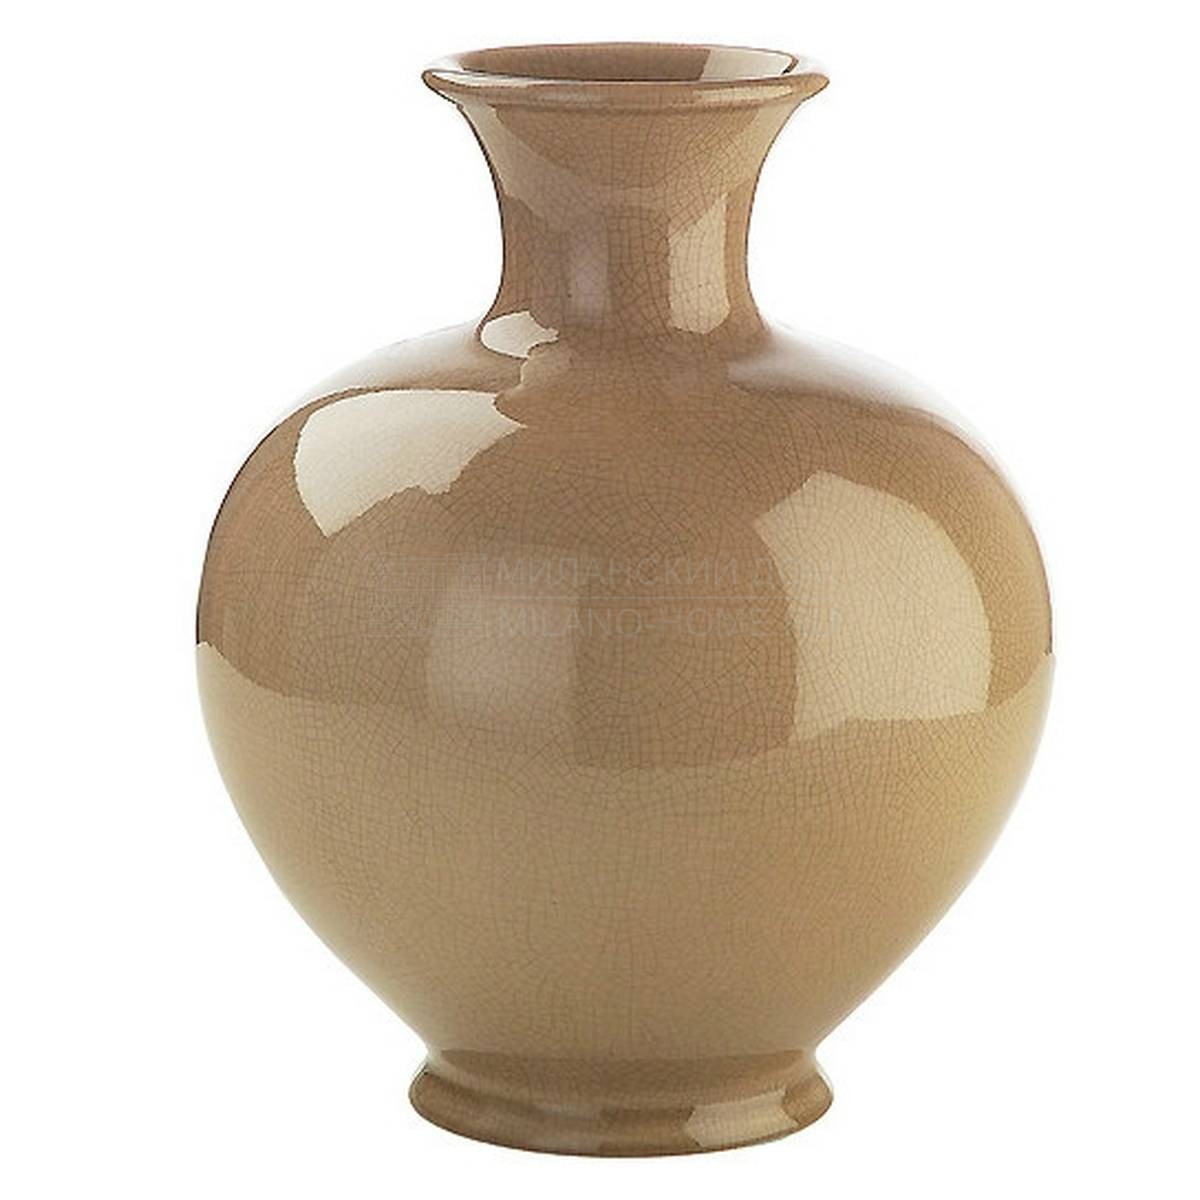 Ваза Ming small vase из Италии фабрики MARIONI